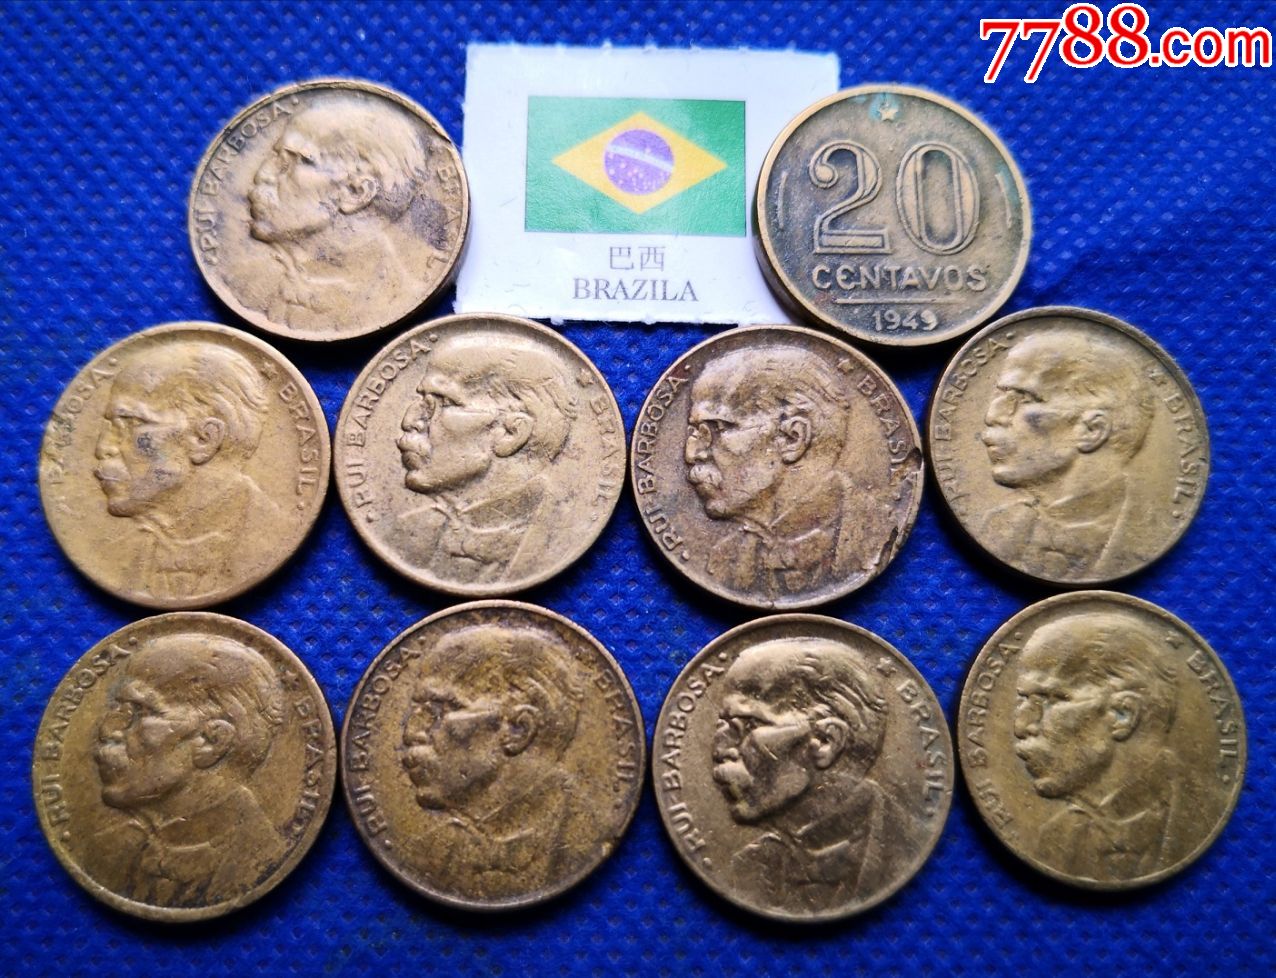 1元巴西硬币10枚批美洲外国世界硬币19mm直径20分巴西钱币wj